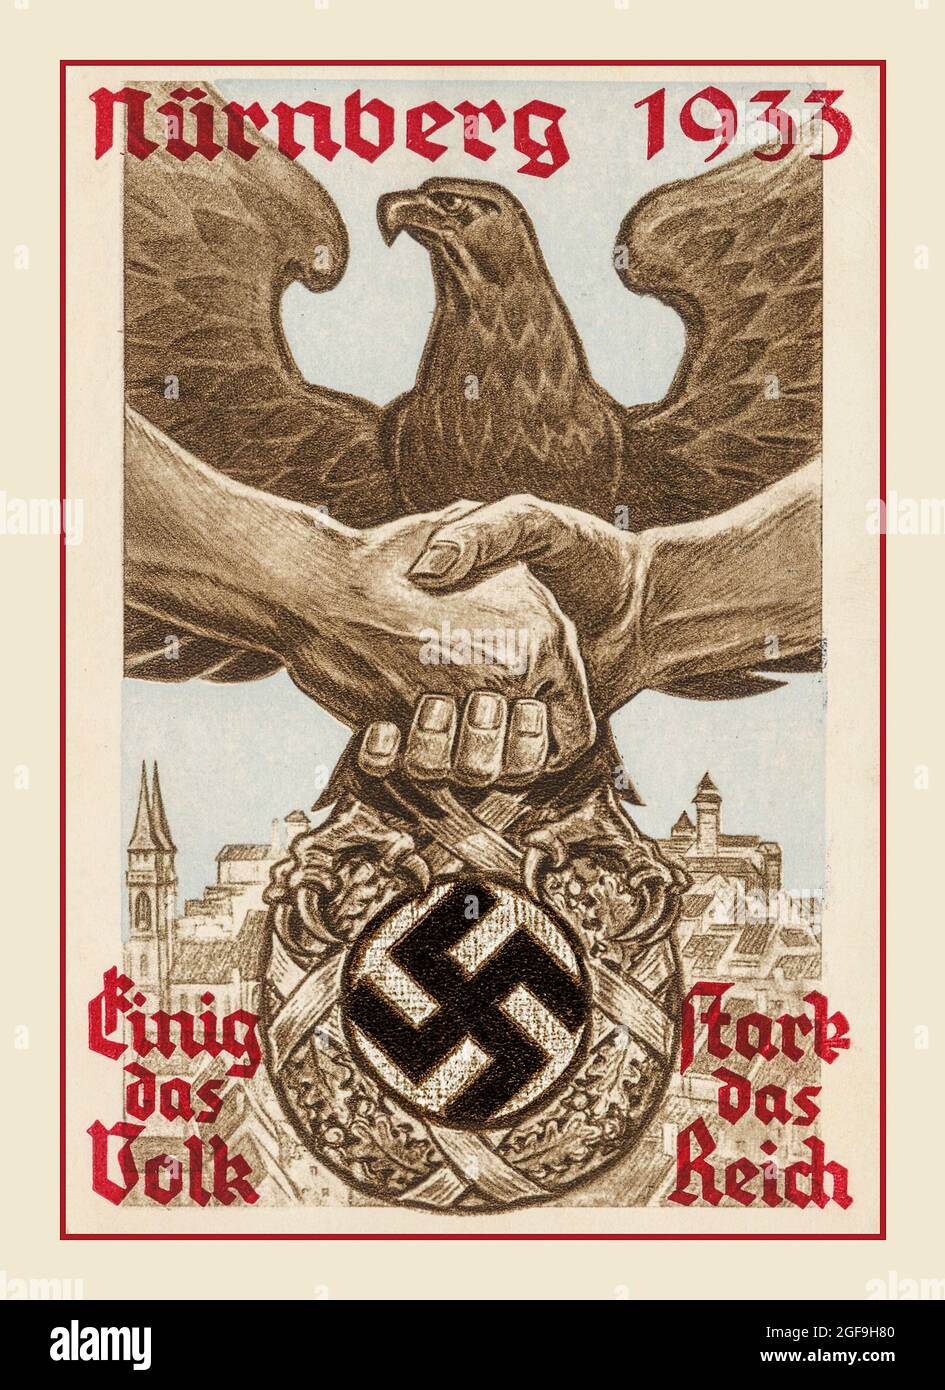 Archiv Nazi-Propaganda Posterkarte 1933 Nürnberg Nazi-Deutschland “ einig das Volk- vereinigt das Volk “ ‘stark das Reich-das starke Imperium’ mit Händen, die über dem deutschen Adler zittern und das Nazi-Swastika-Symbol Nürnberg Deutschland fassen Stockfoto